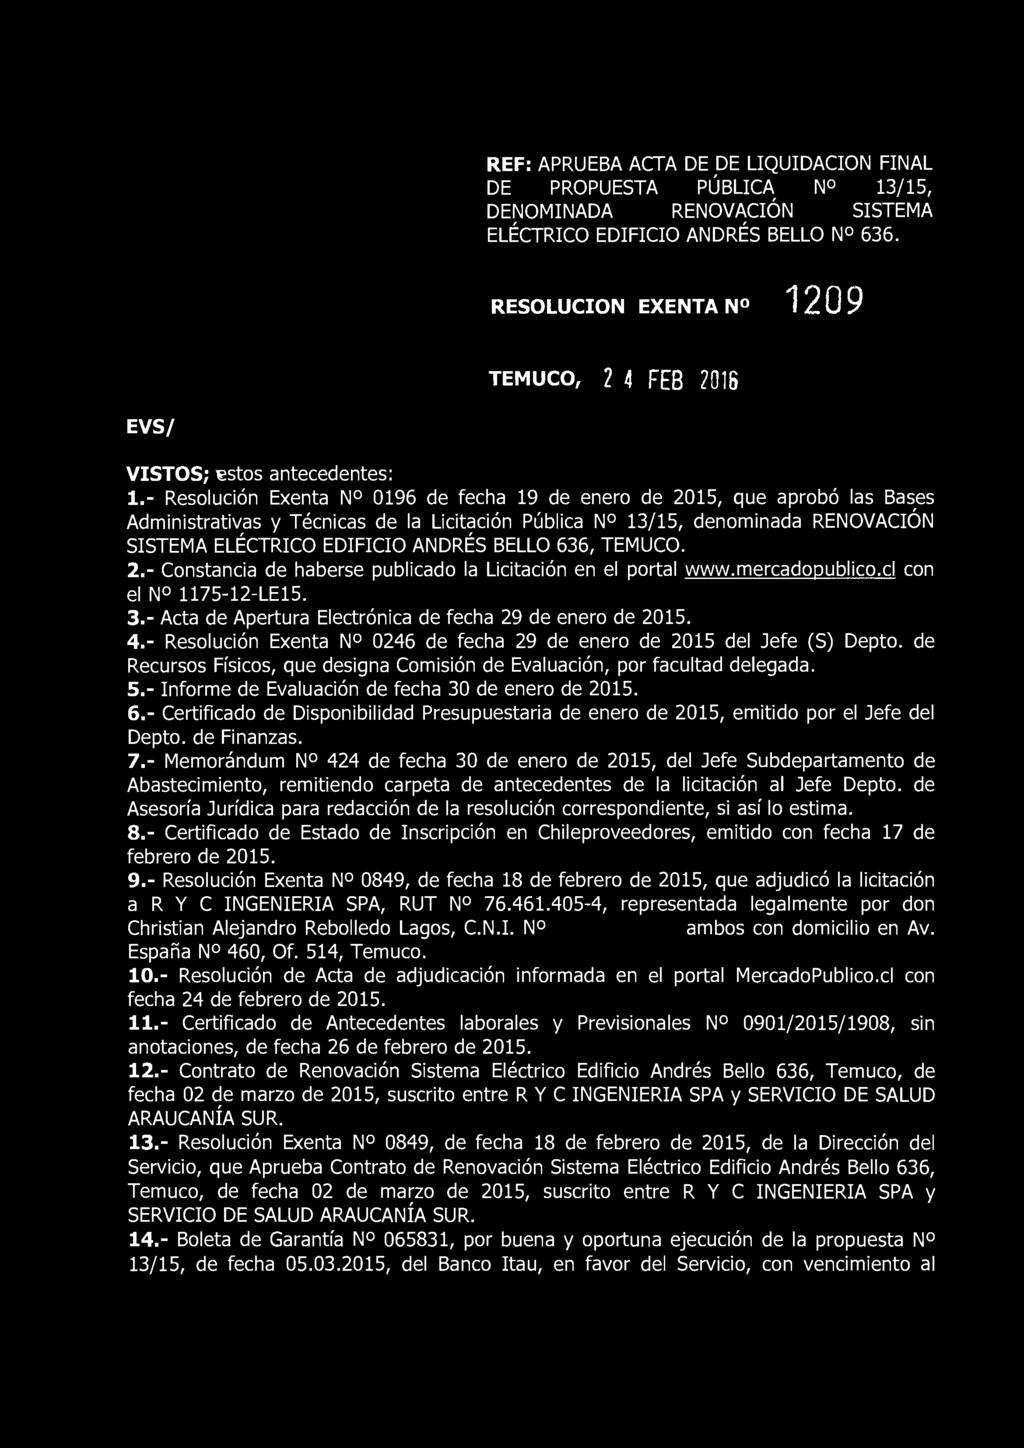 - Resolución Exenta N 0196 de fecha 19 de enero de 2015, que aprobó las Bases Administrativas y Técnicas de la Licitación Pública N 13/15, denominada RENOVACIÓN SISTEMA ELÉCTRICO EDIFICIO ANDRÉS